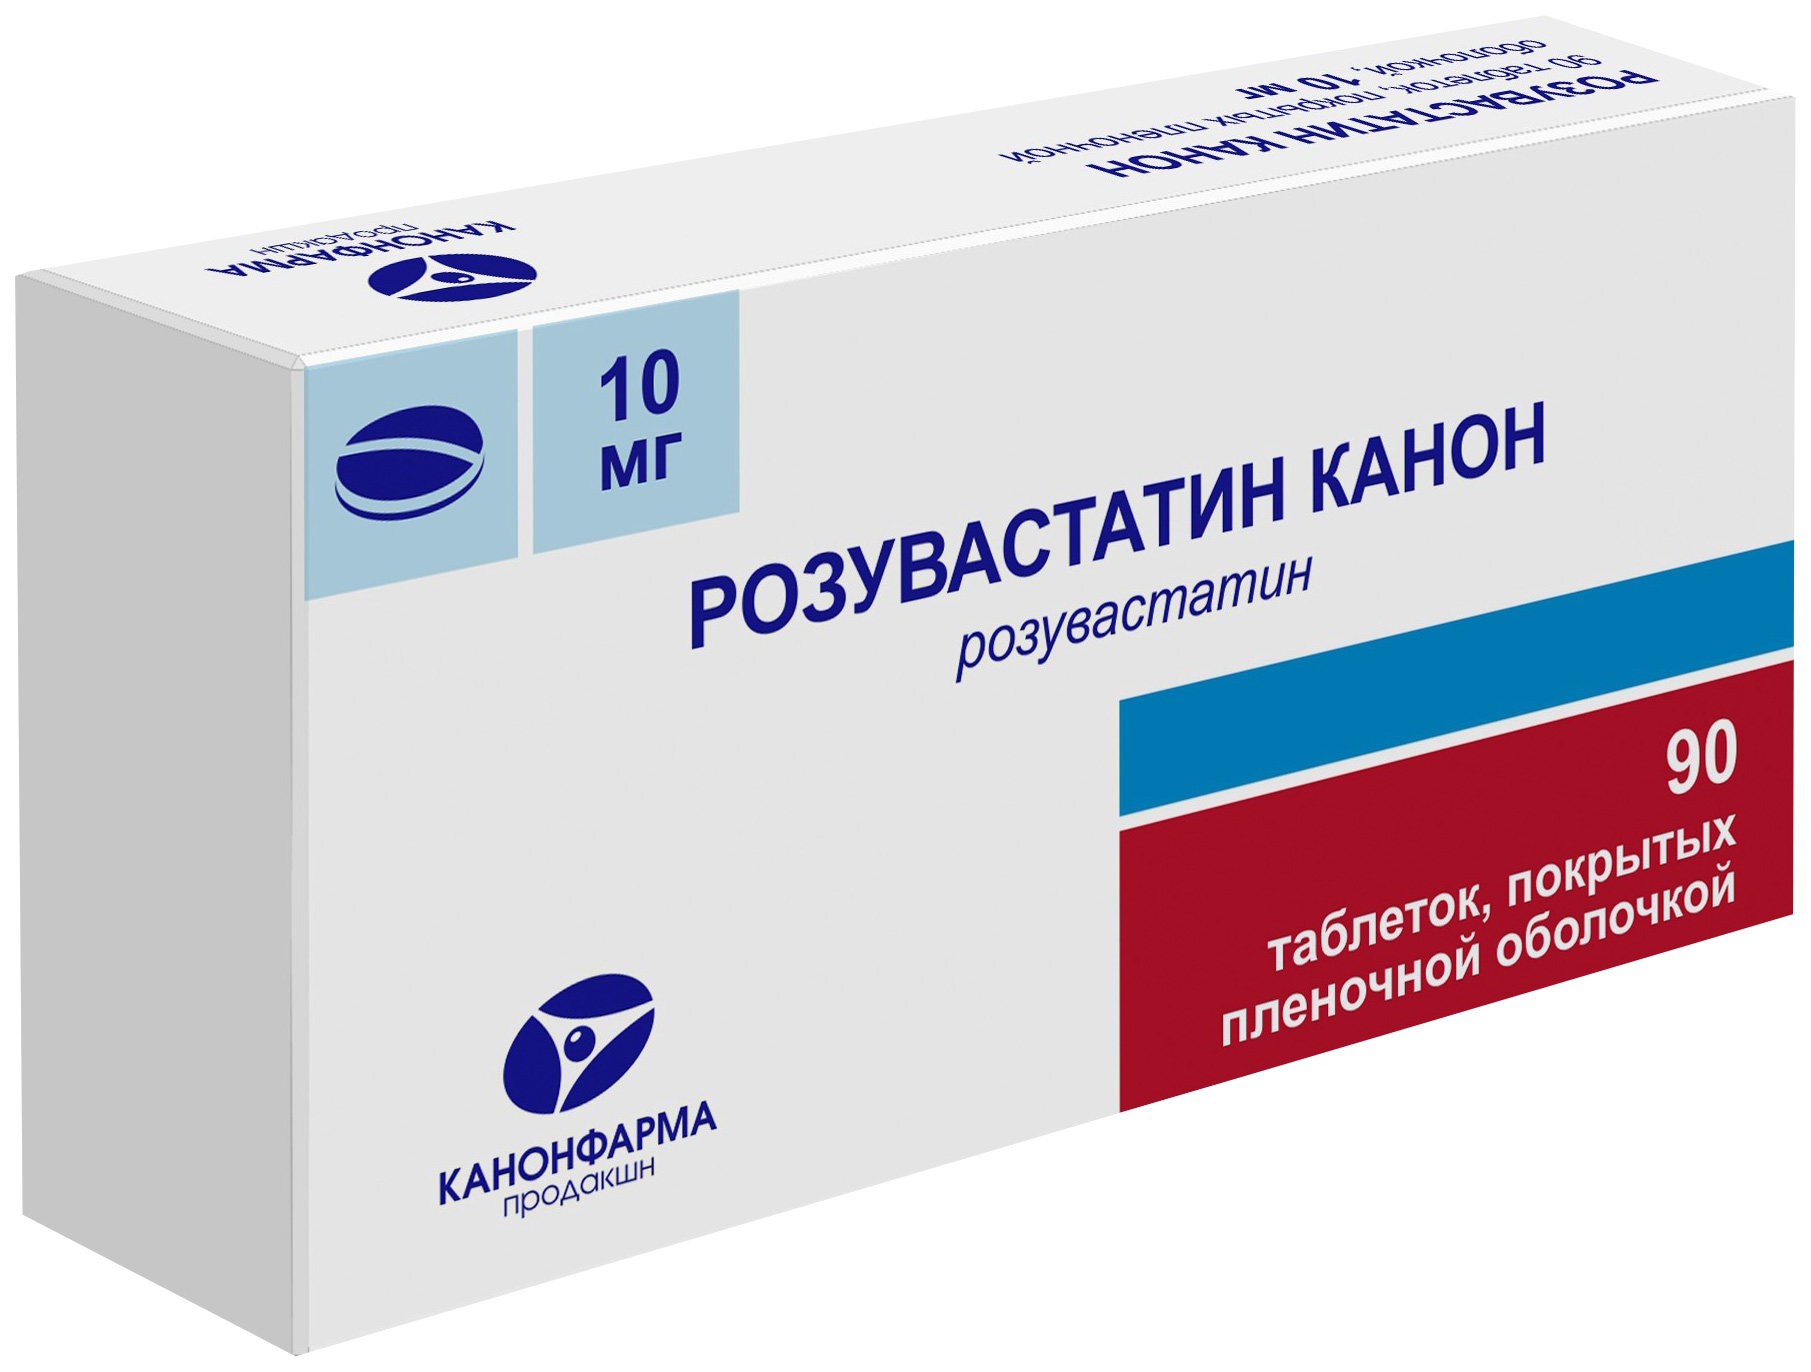 Купить Розувастатин Канон таблетки покрытые пленочной оболочкой 10 мг 90 шт., Канонфарма продакшн ЗАО